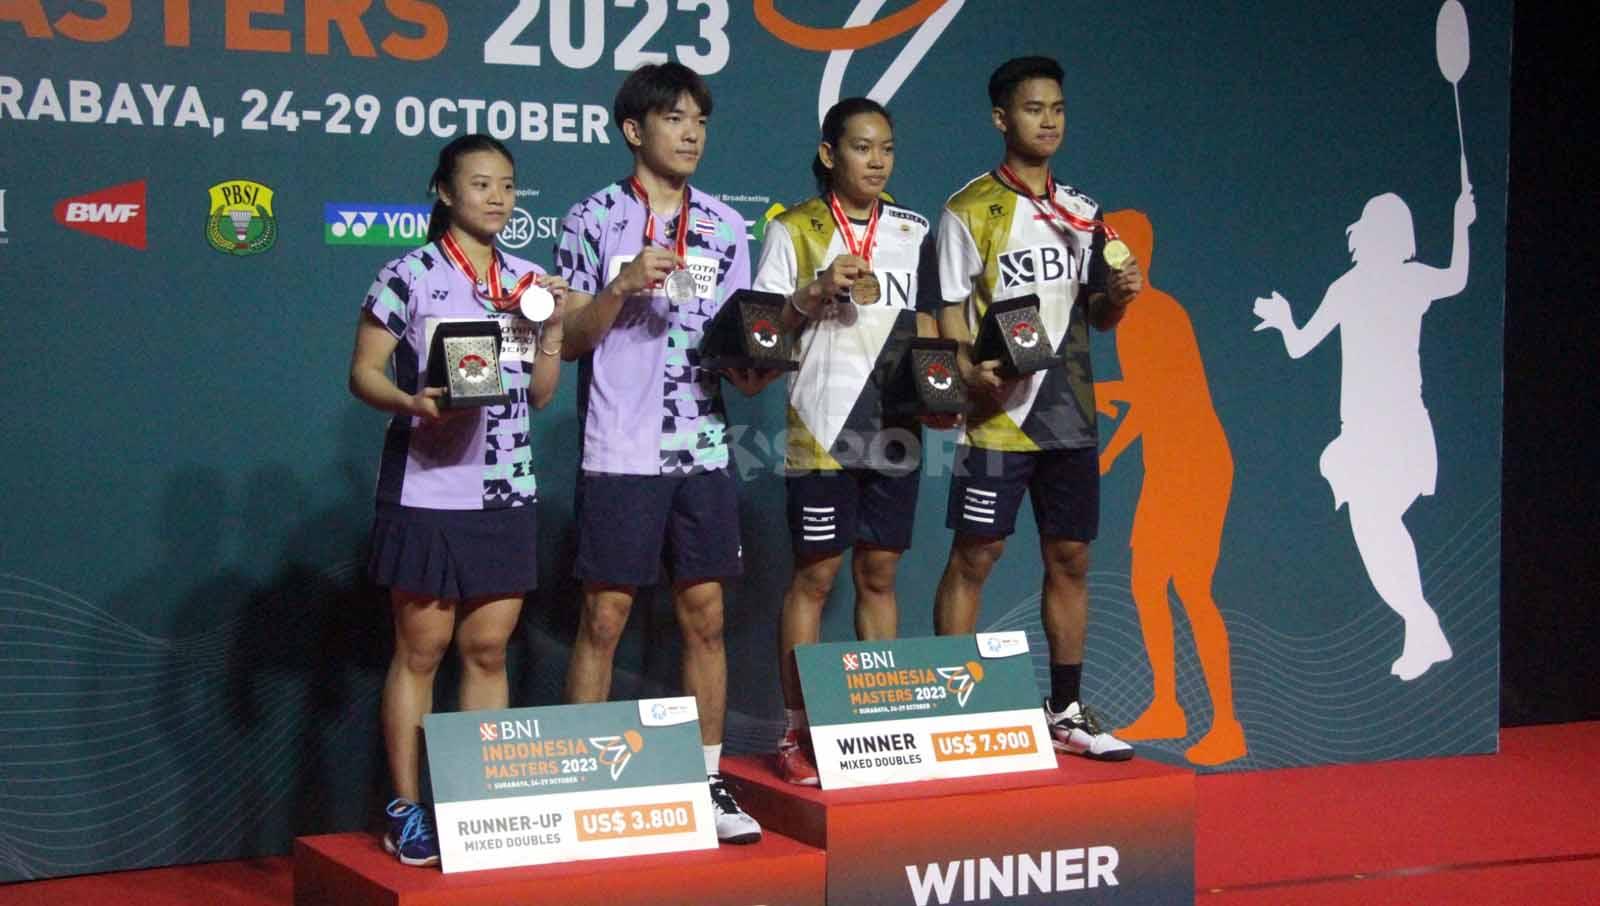 Kedua pasangan ganda campuran Ruttanapak/Jhenicha dan Jafar/Aisyah berfoto dengan kalung medali di podium.